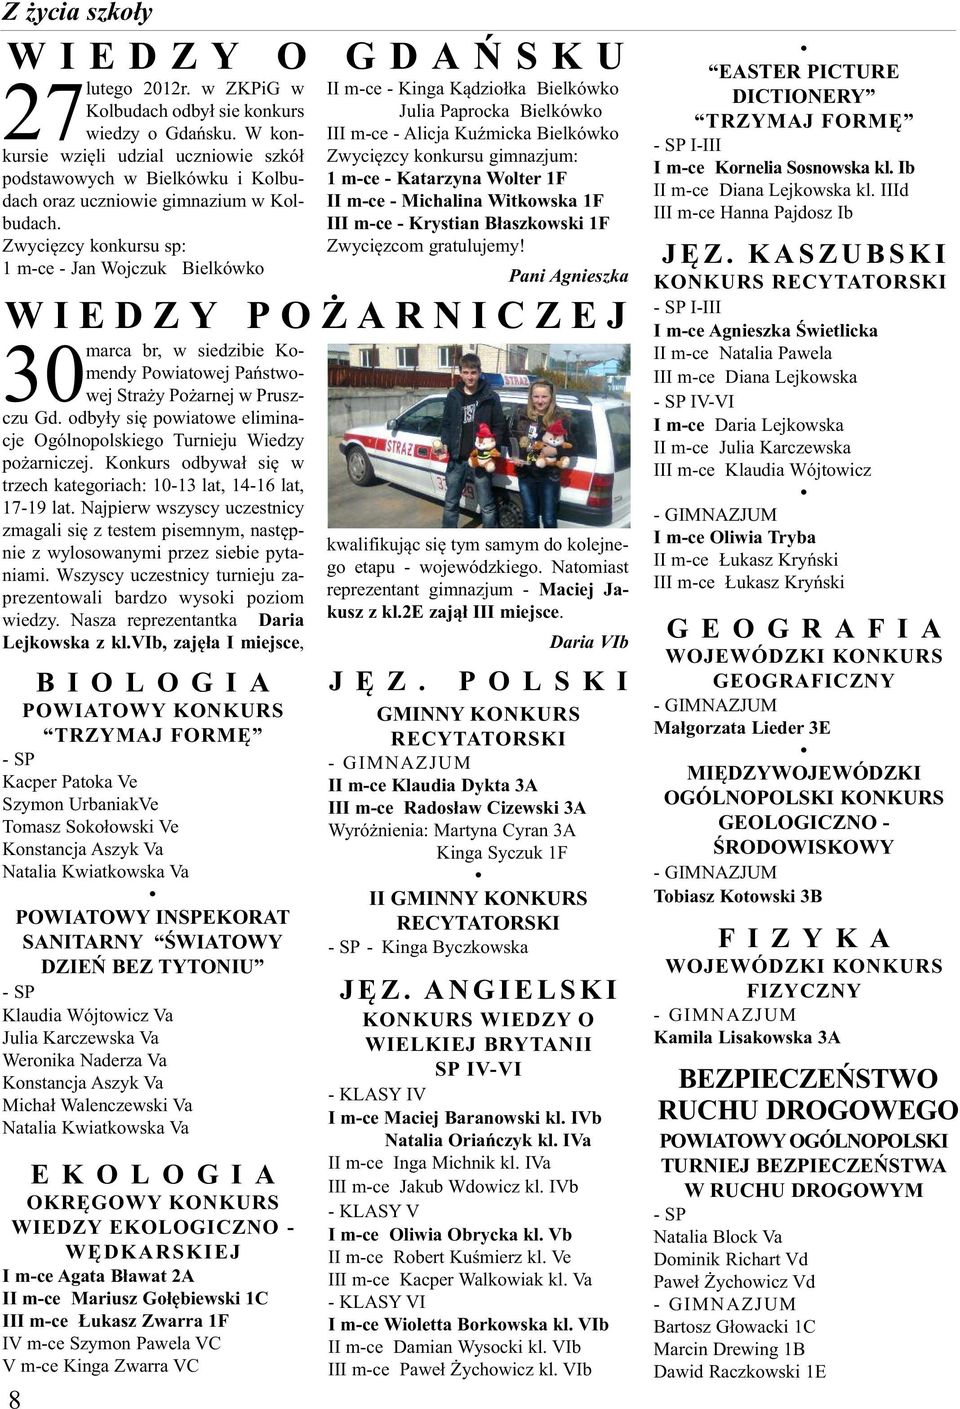 Zwycięzcy konkursu sp: 1 m-ce - Jan Wojczuk Bielkówko br, w siedzibie Komendy Powiatowej Państwowej Straży Pożarnej w Prusz- 30marca czu Gd.